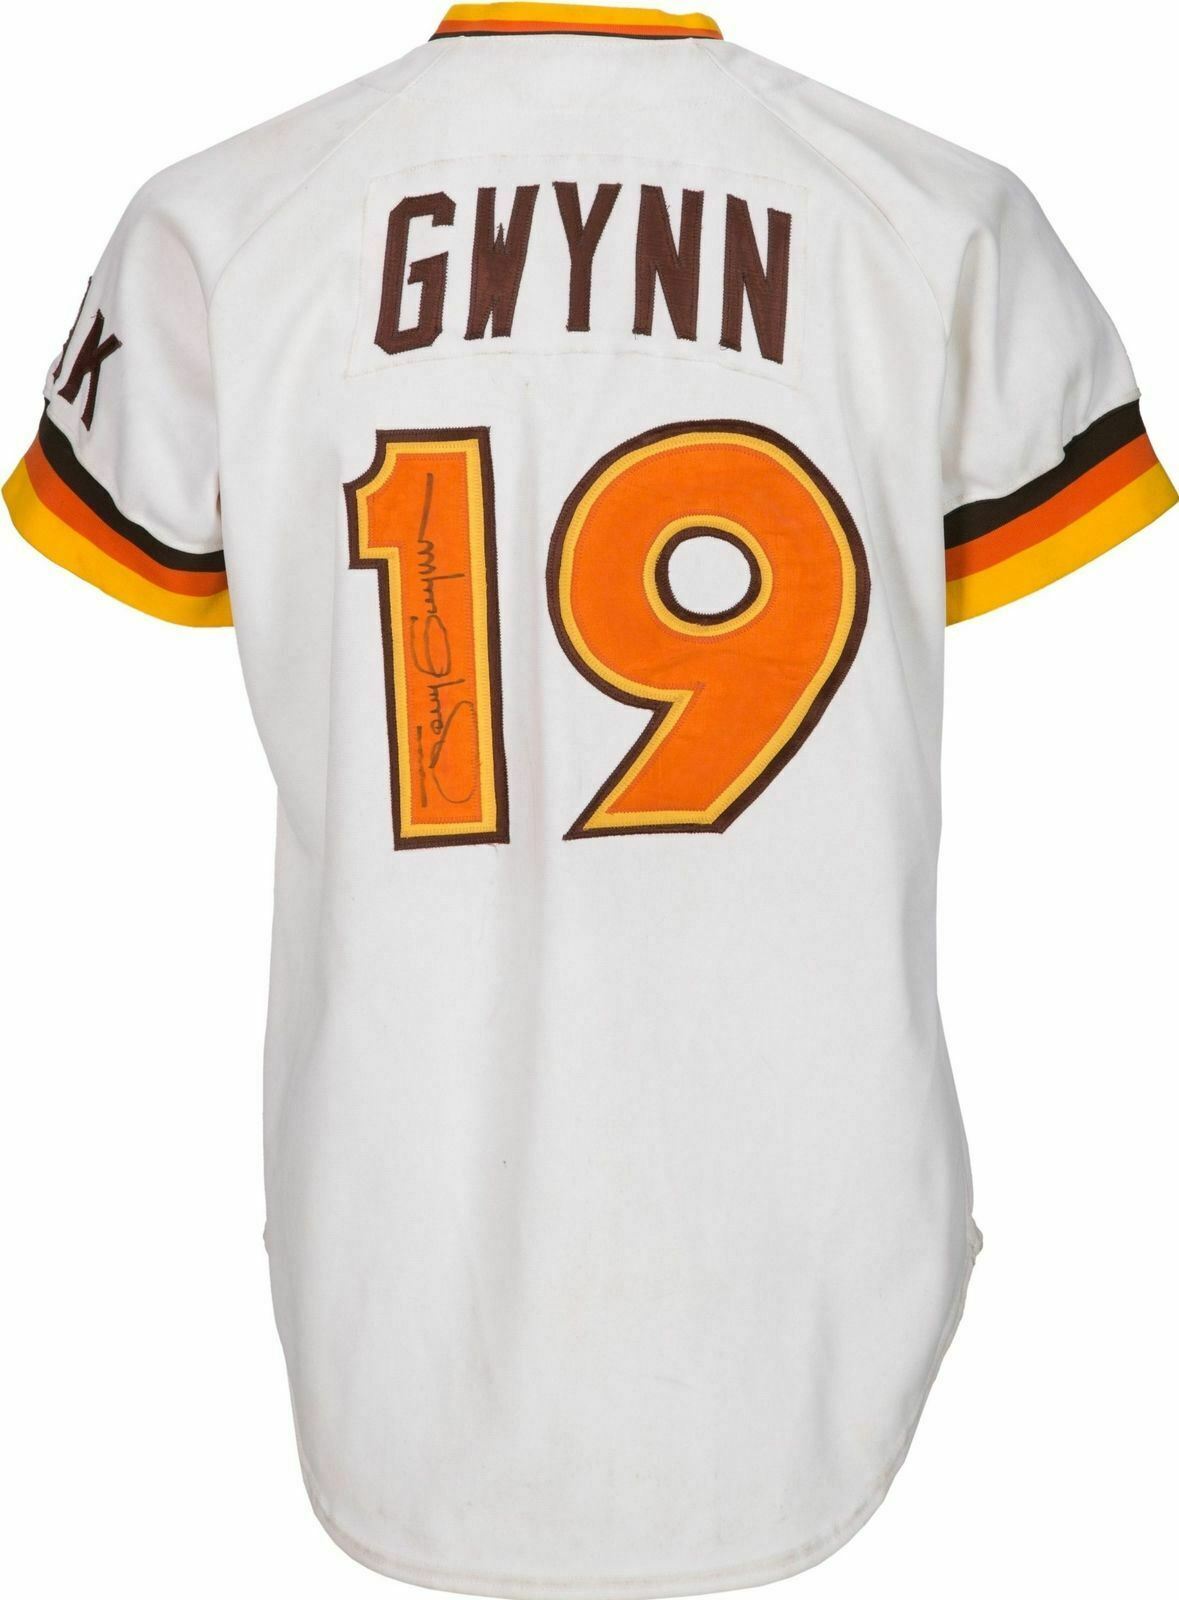 Tony Gwynn d.2014 signed HOF '07 1984 Padres Jersey-JSA